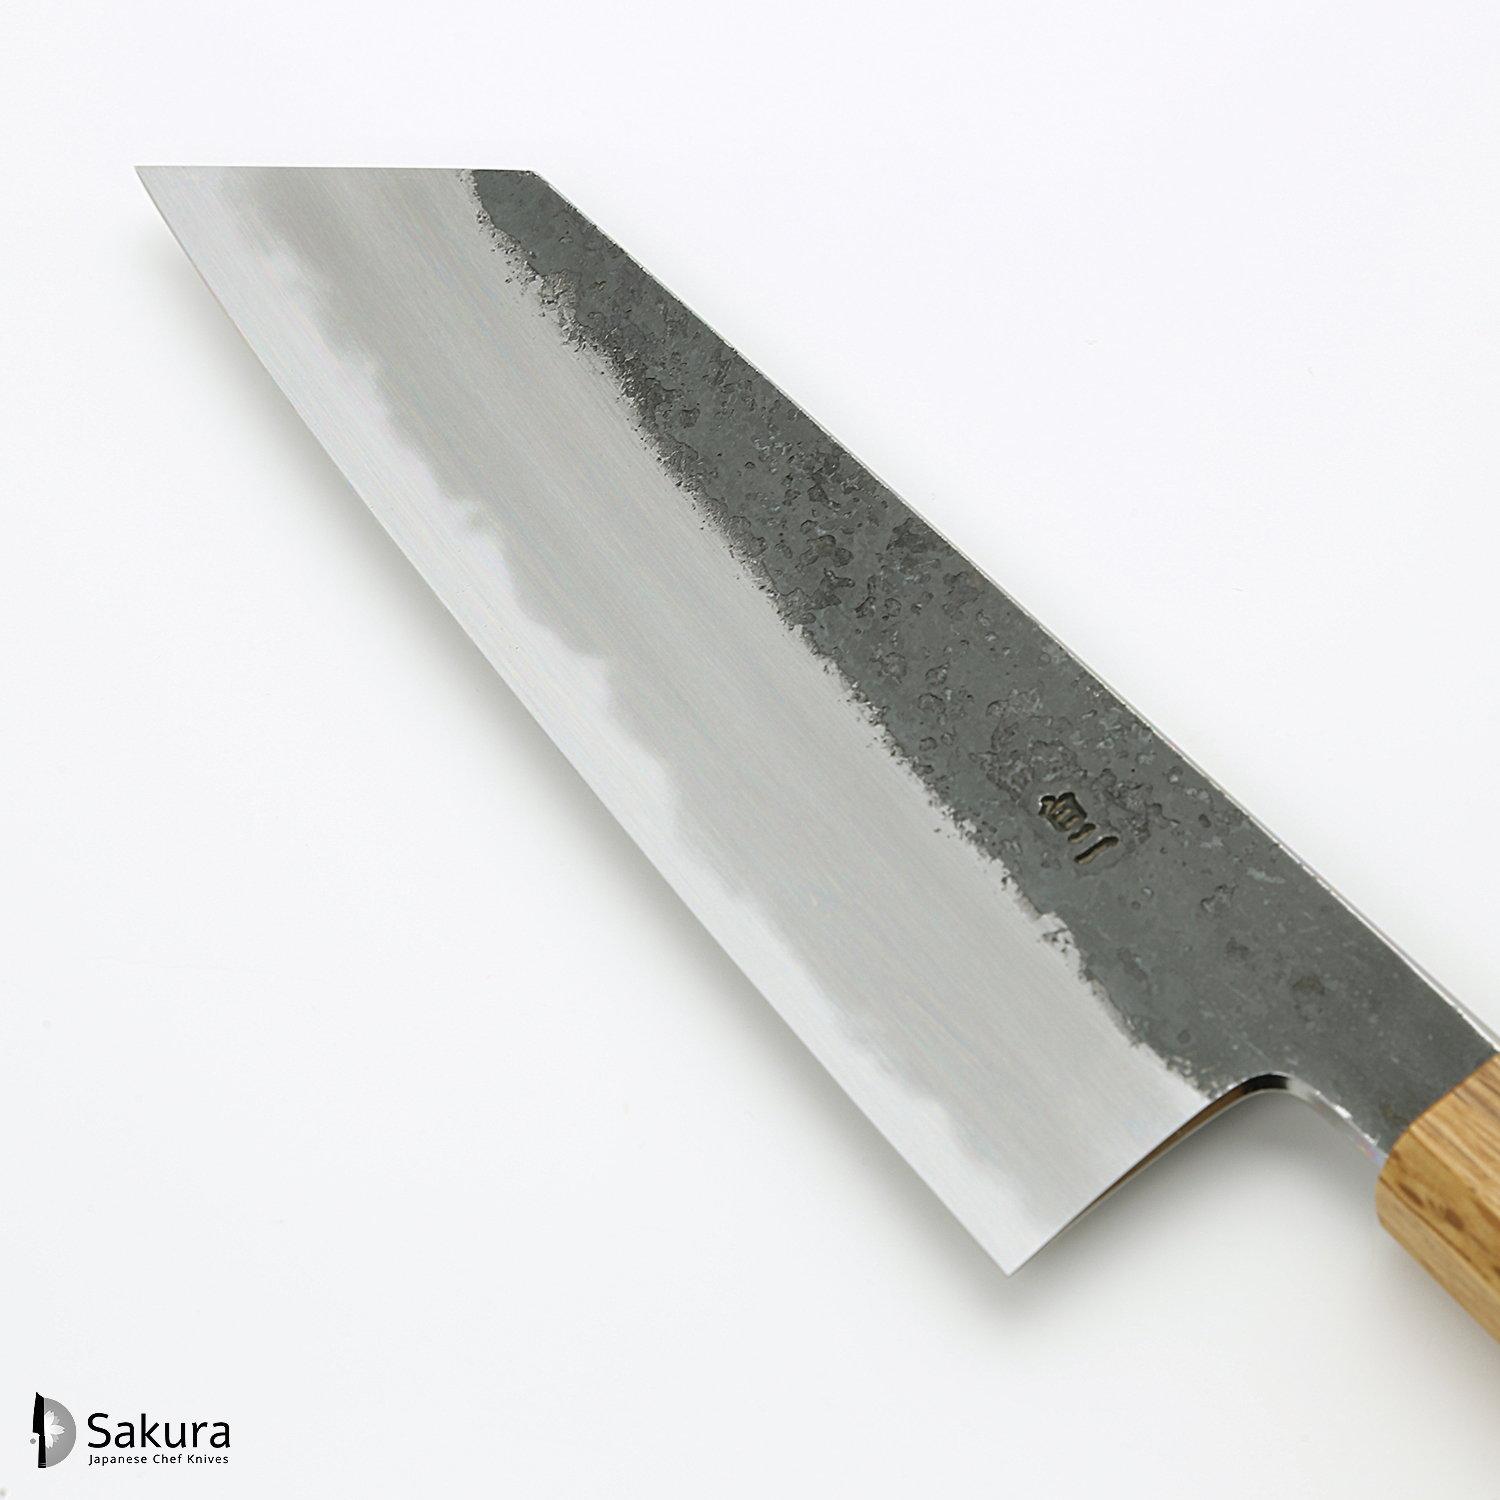 סכין רב-תכליתית בּוּנְקָה 170מ״מ מחושלת בעבודת יד 3 שכבות: פלדת פחמן יפנית מתקדמת מסוג Shirogami #2 עטופה ברזל בגימור קורואיצ׳י שחור גימור קורואיצ׳י שחור האדו יפן